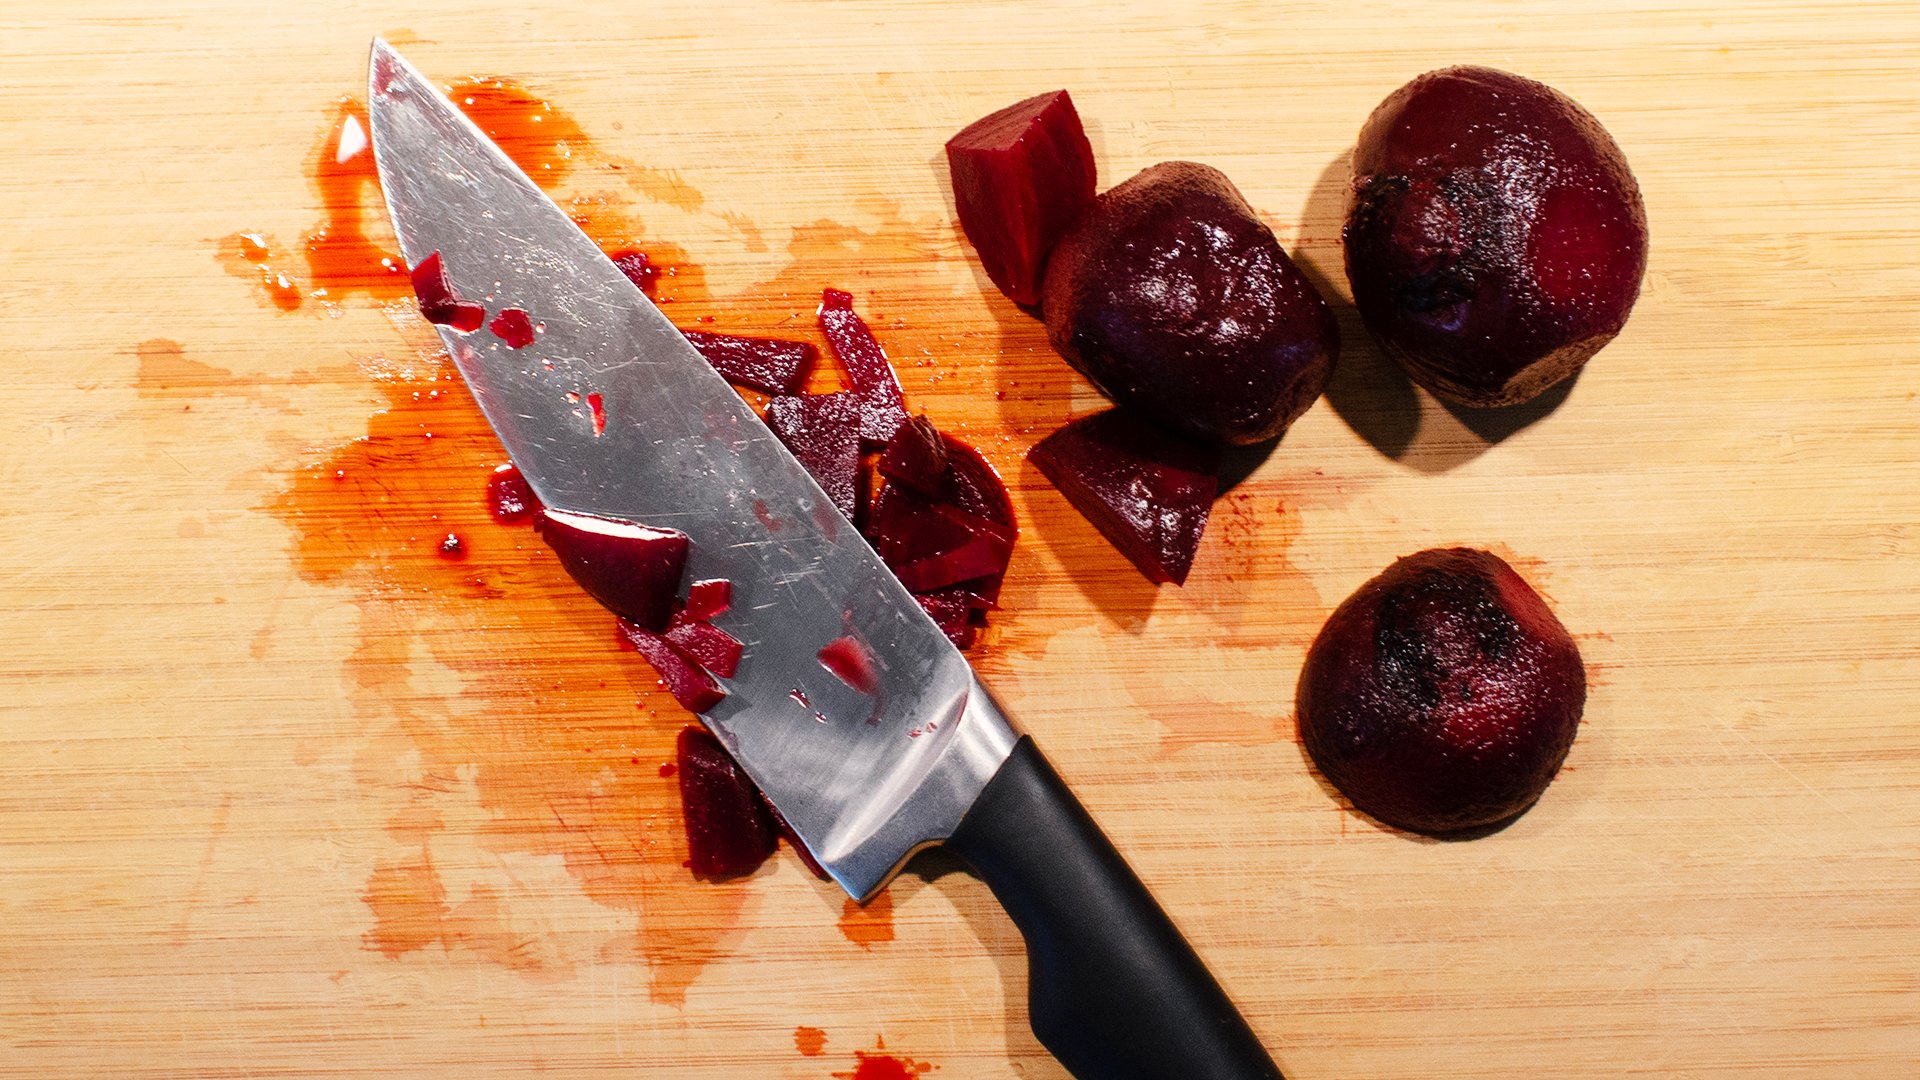 På bilden syns en kökskniv liggandes på en skärbräda med hackade rödbetor runt omkring.